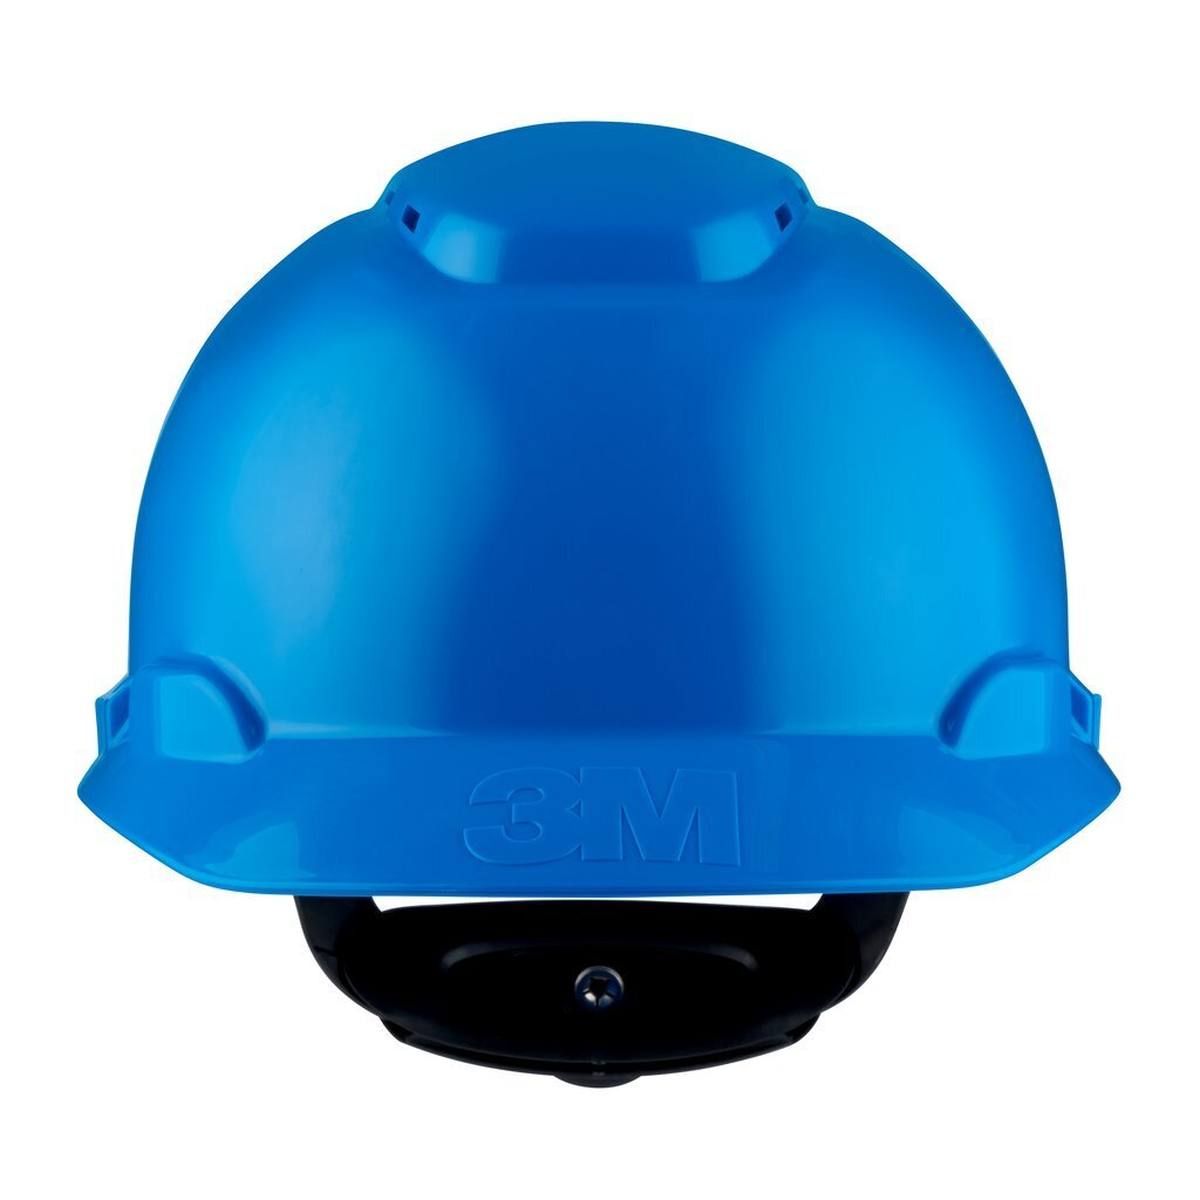 3M Schutzhelm H700-Serie H700N-BB in Blau, mit Ratsche und Kunststoffschweißband